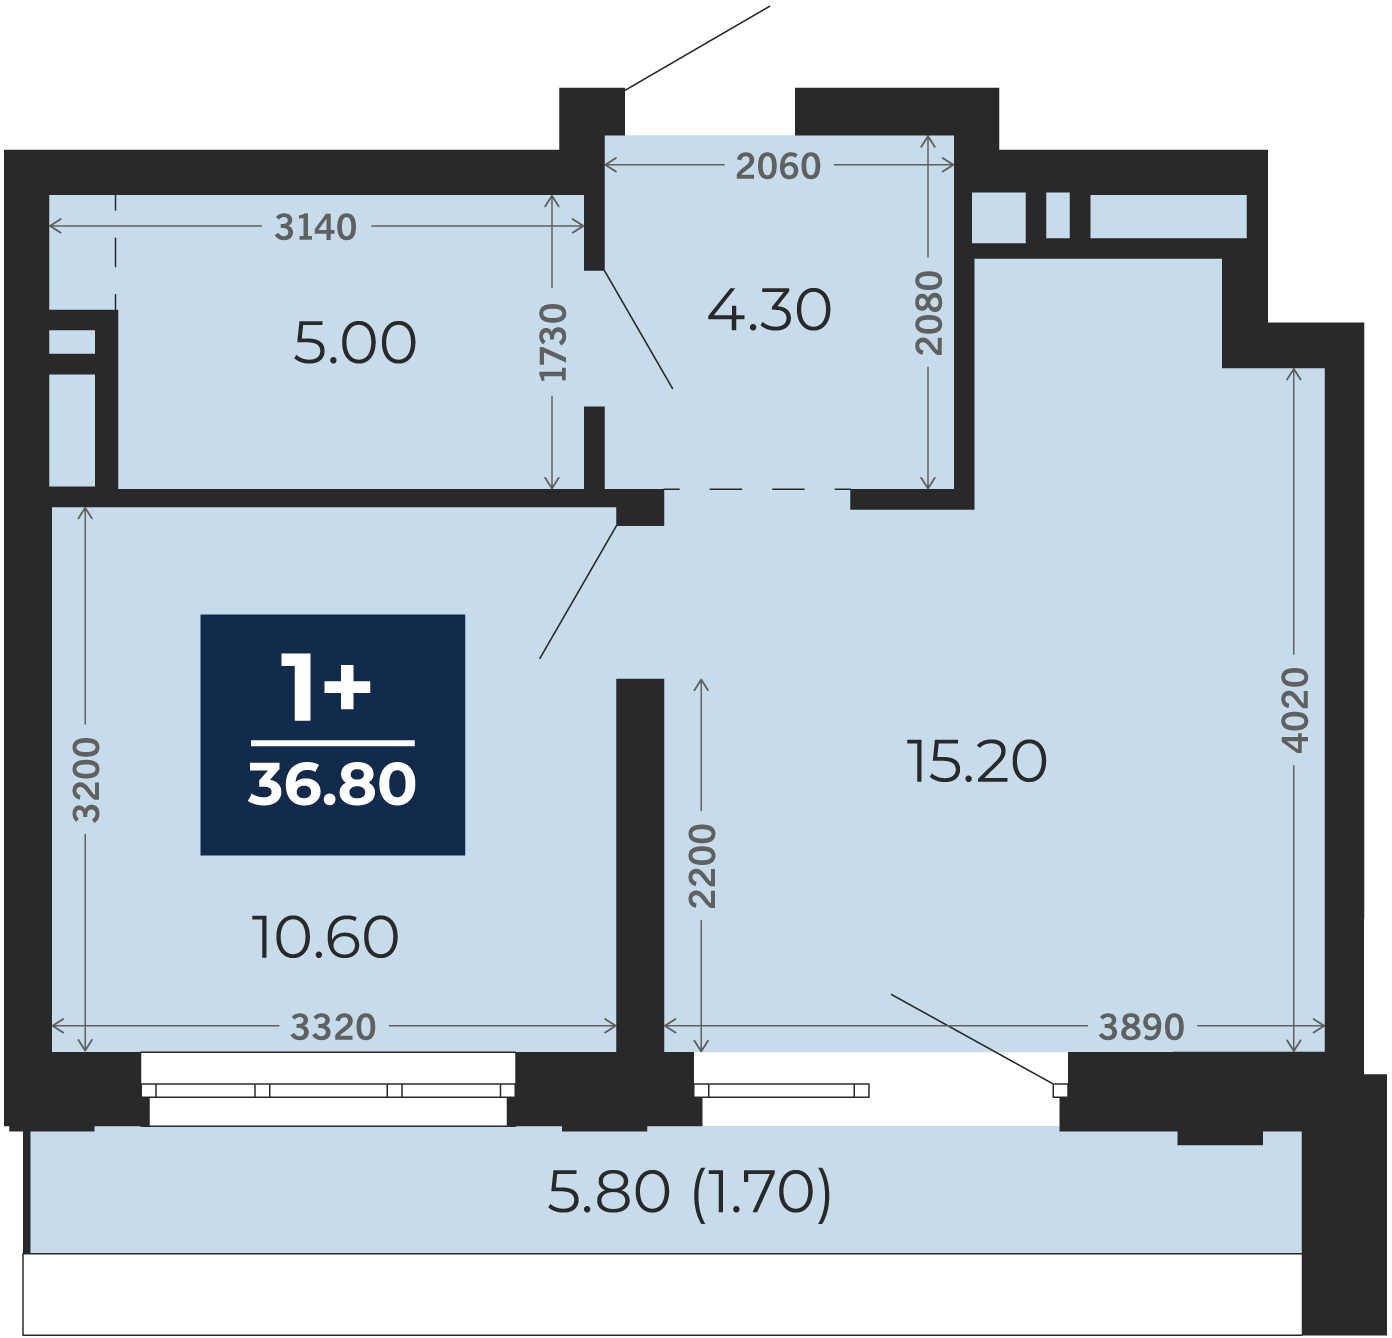 Квартира № 345, 1-комнатная, 36.8 кв. м, 17 этаж